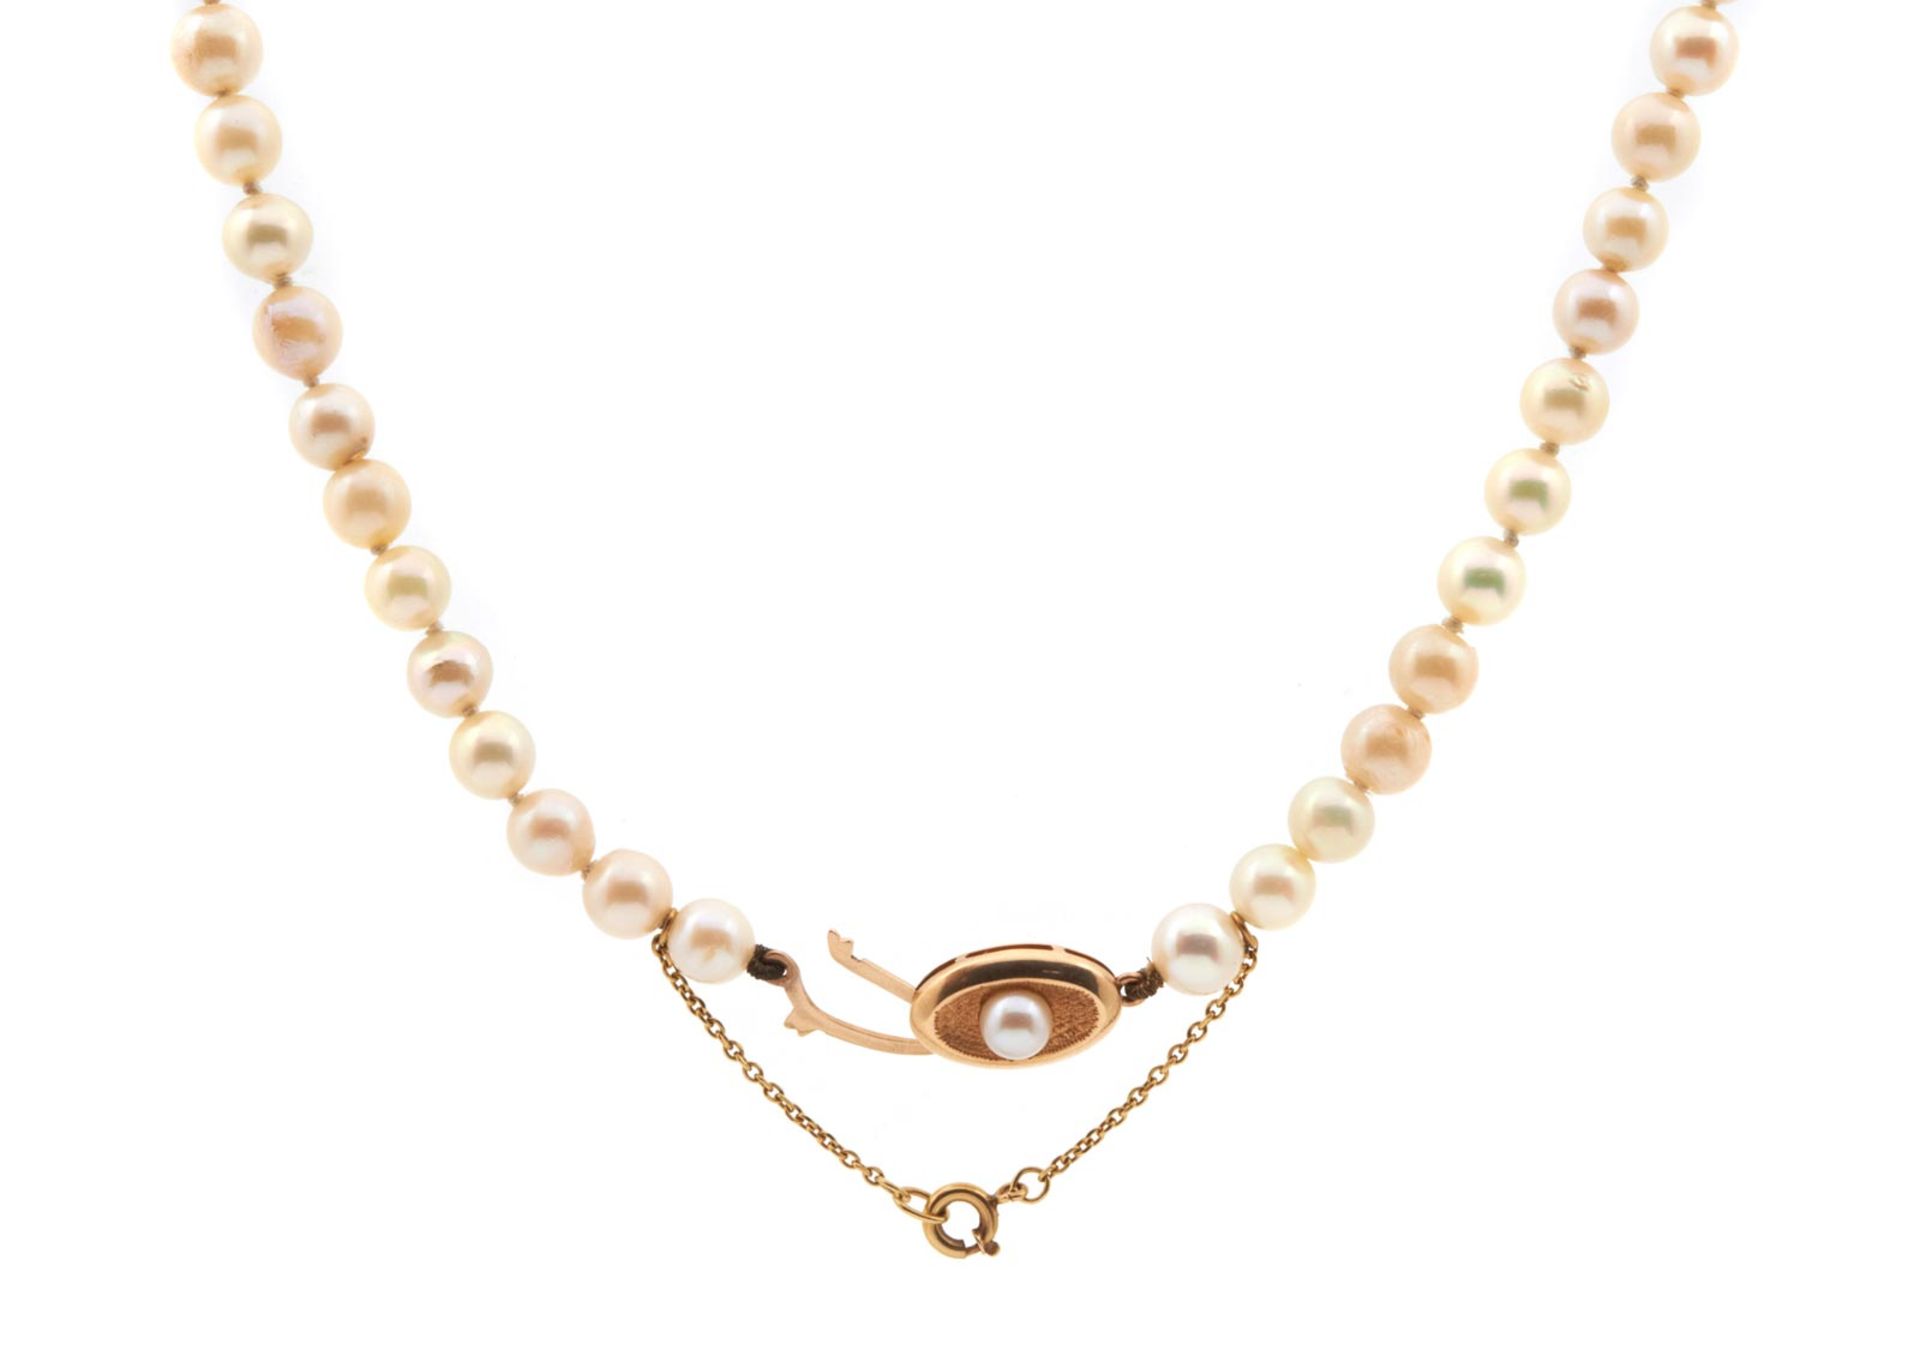 NECKLACE de perlas cultivadas de 6 mm. de diámetro. Cierre en oro y perla. 29,10 gr.